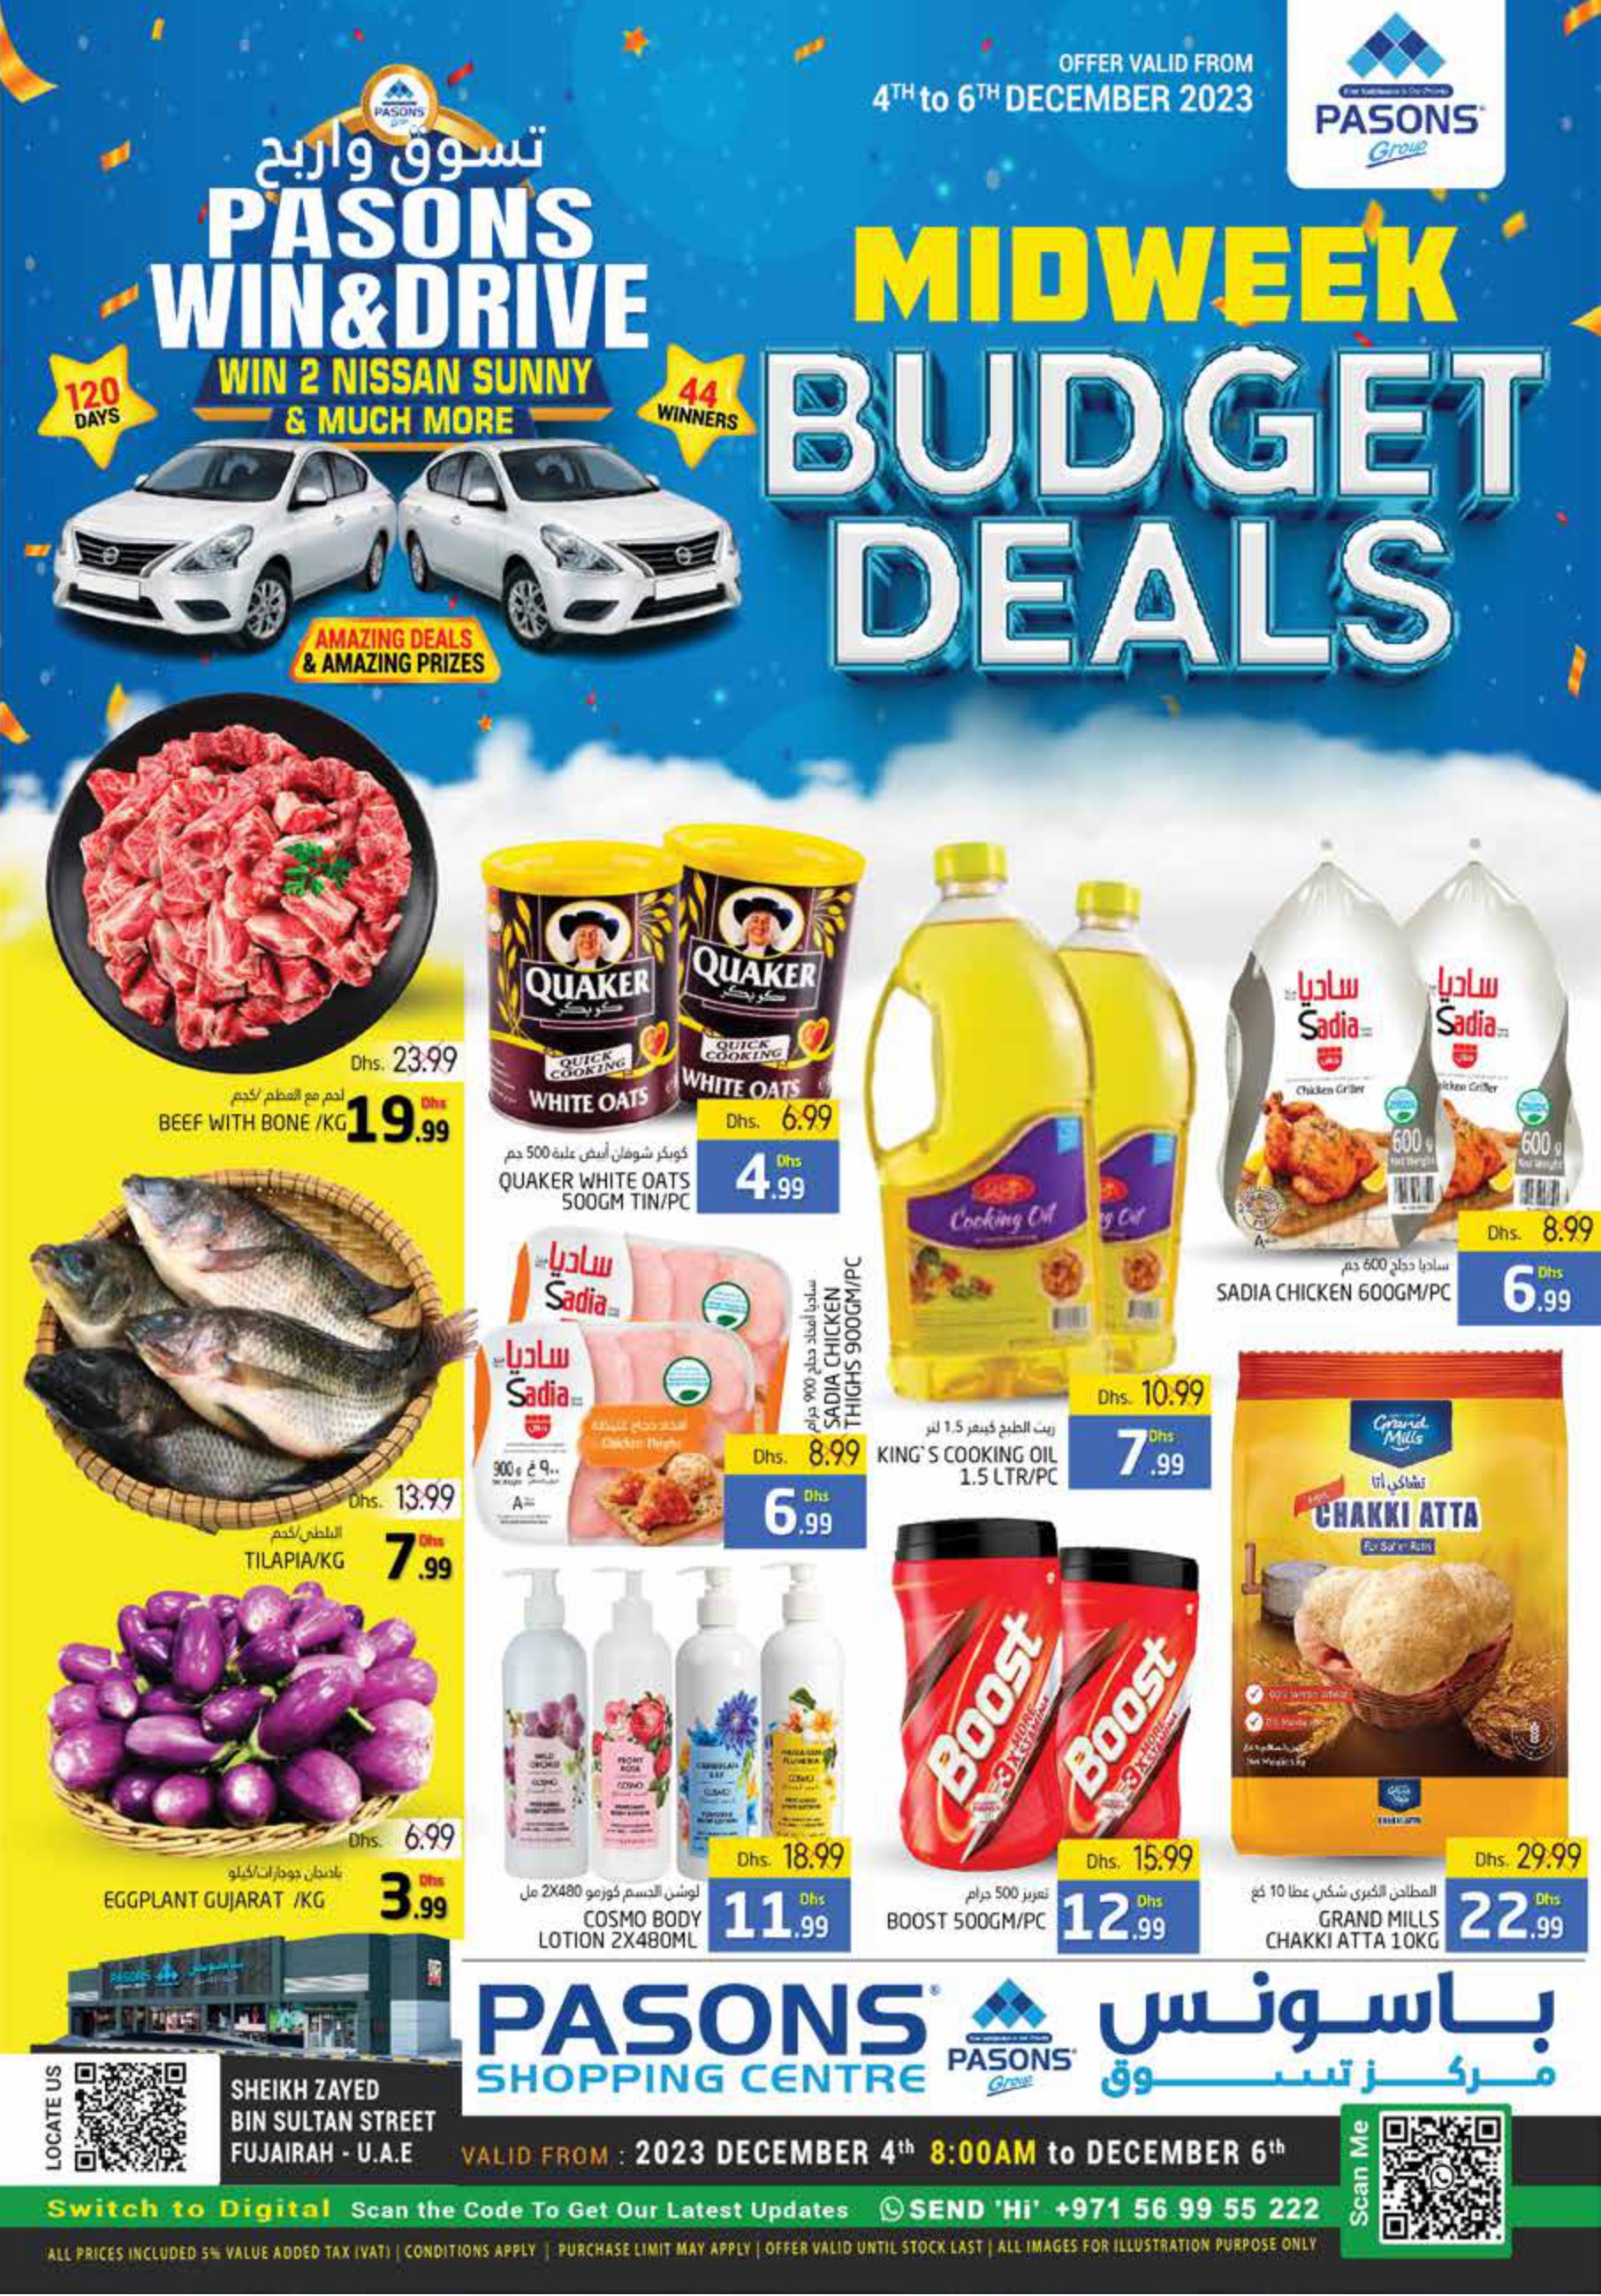 Page 1 at Midweek Budget Deals at Pasons Shopping Centre Fujairah